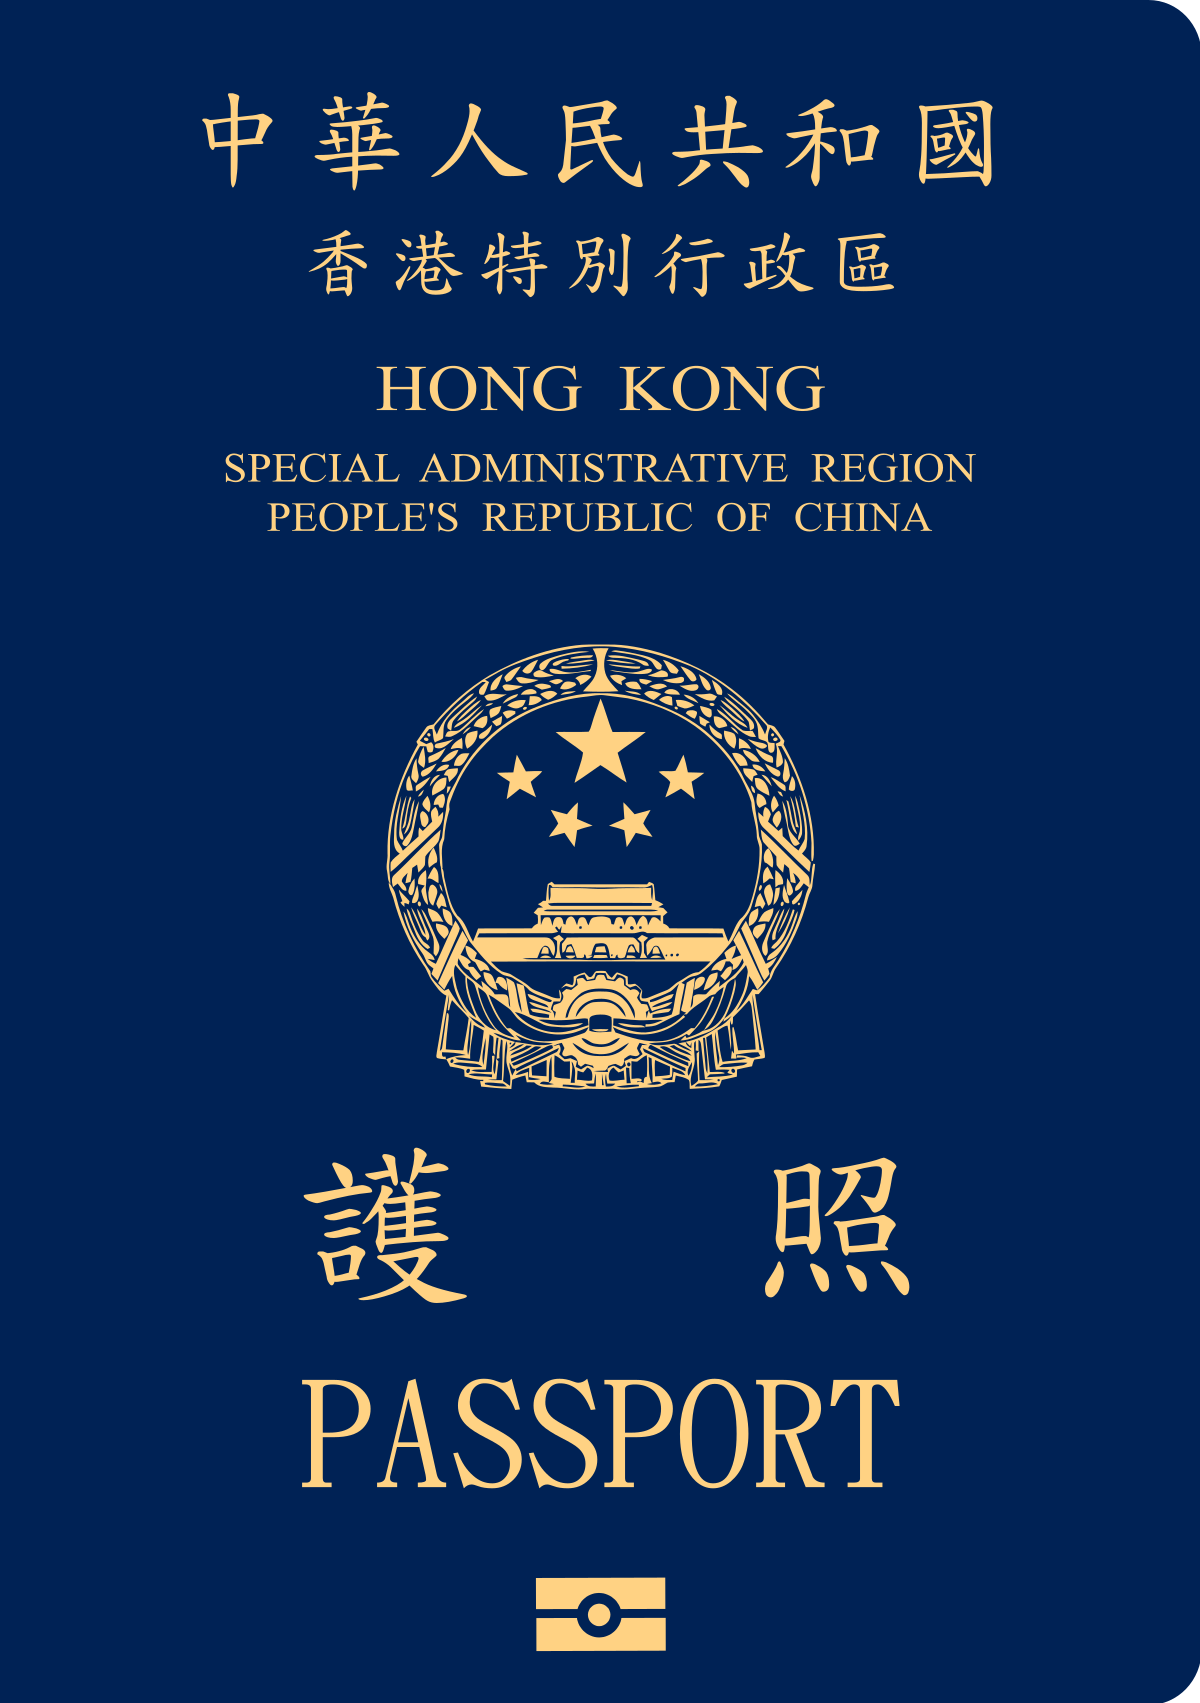 Hong Kong Passport - Valid Documents